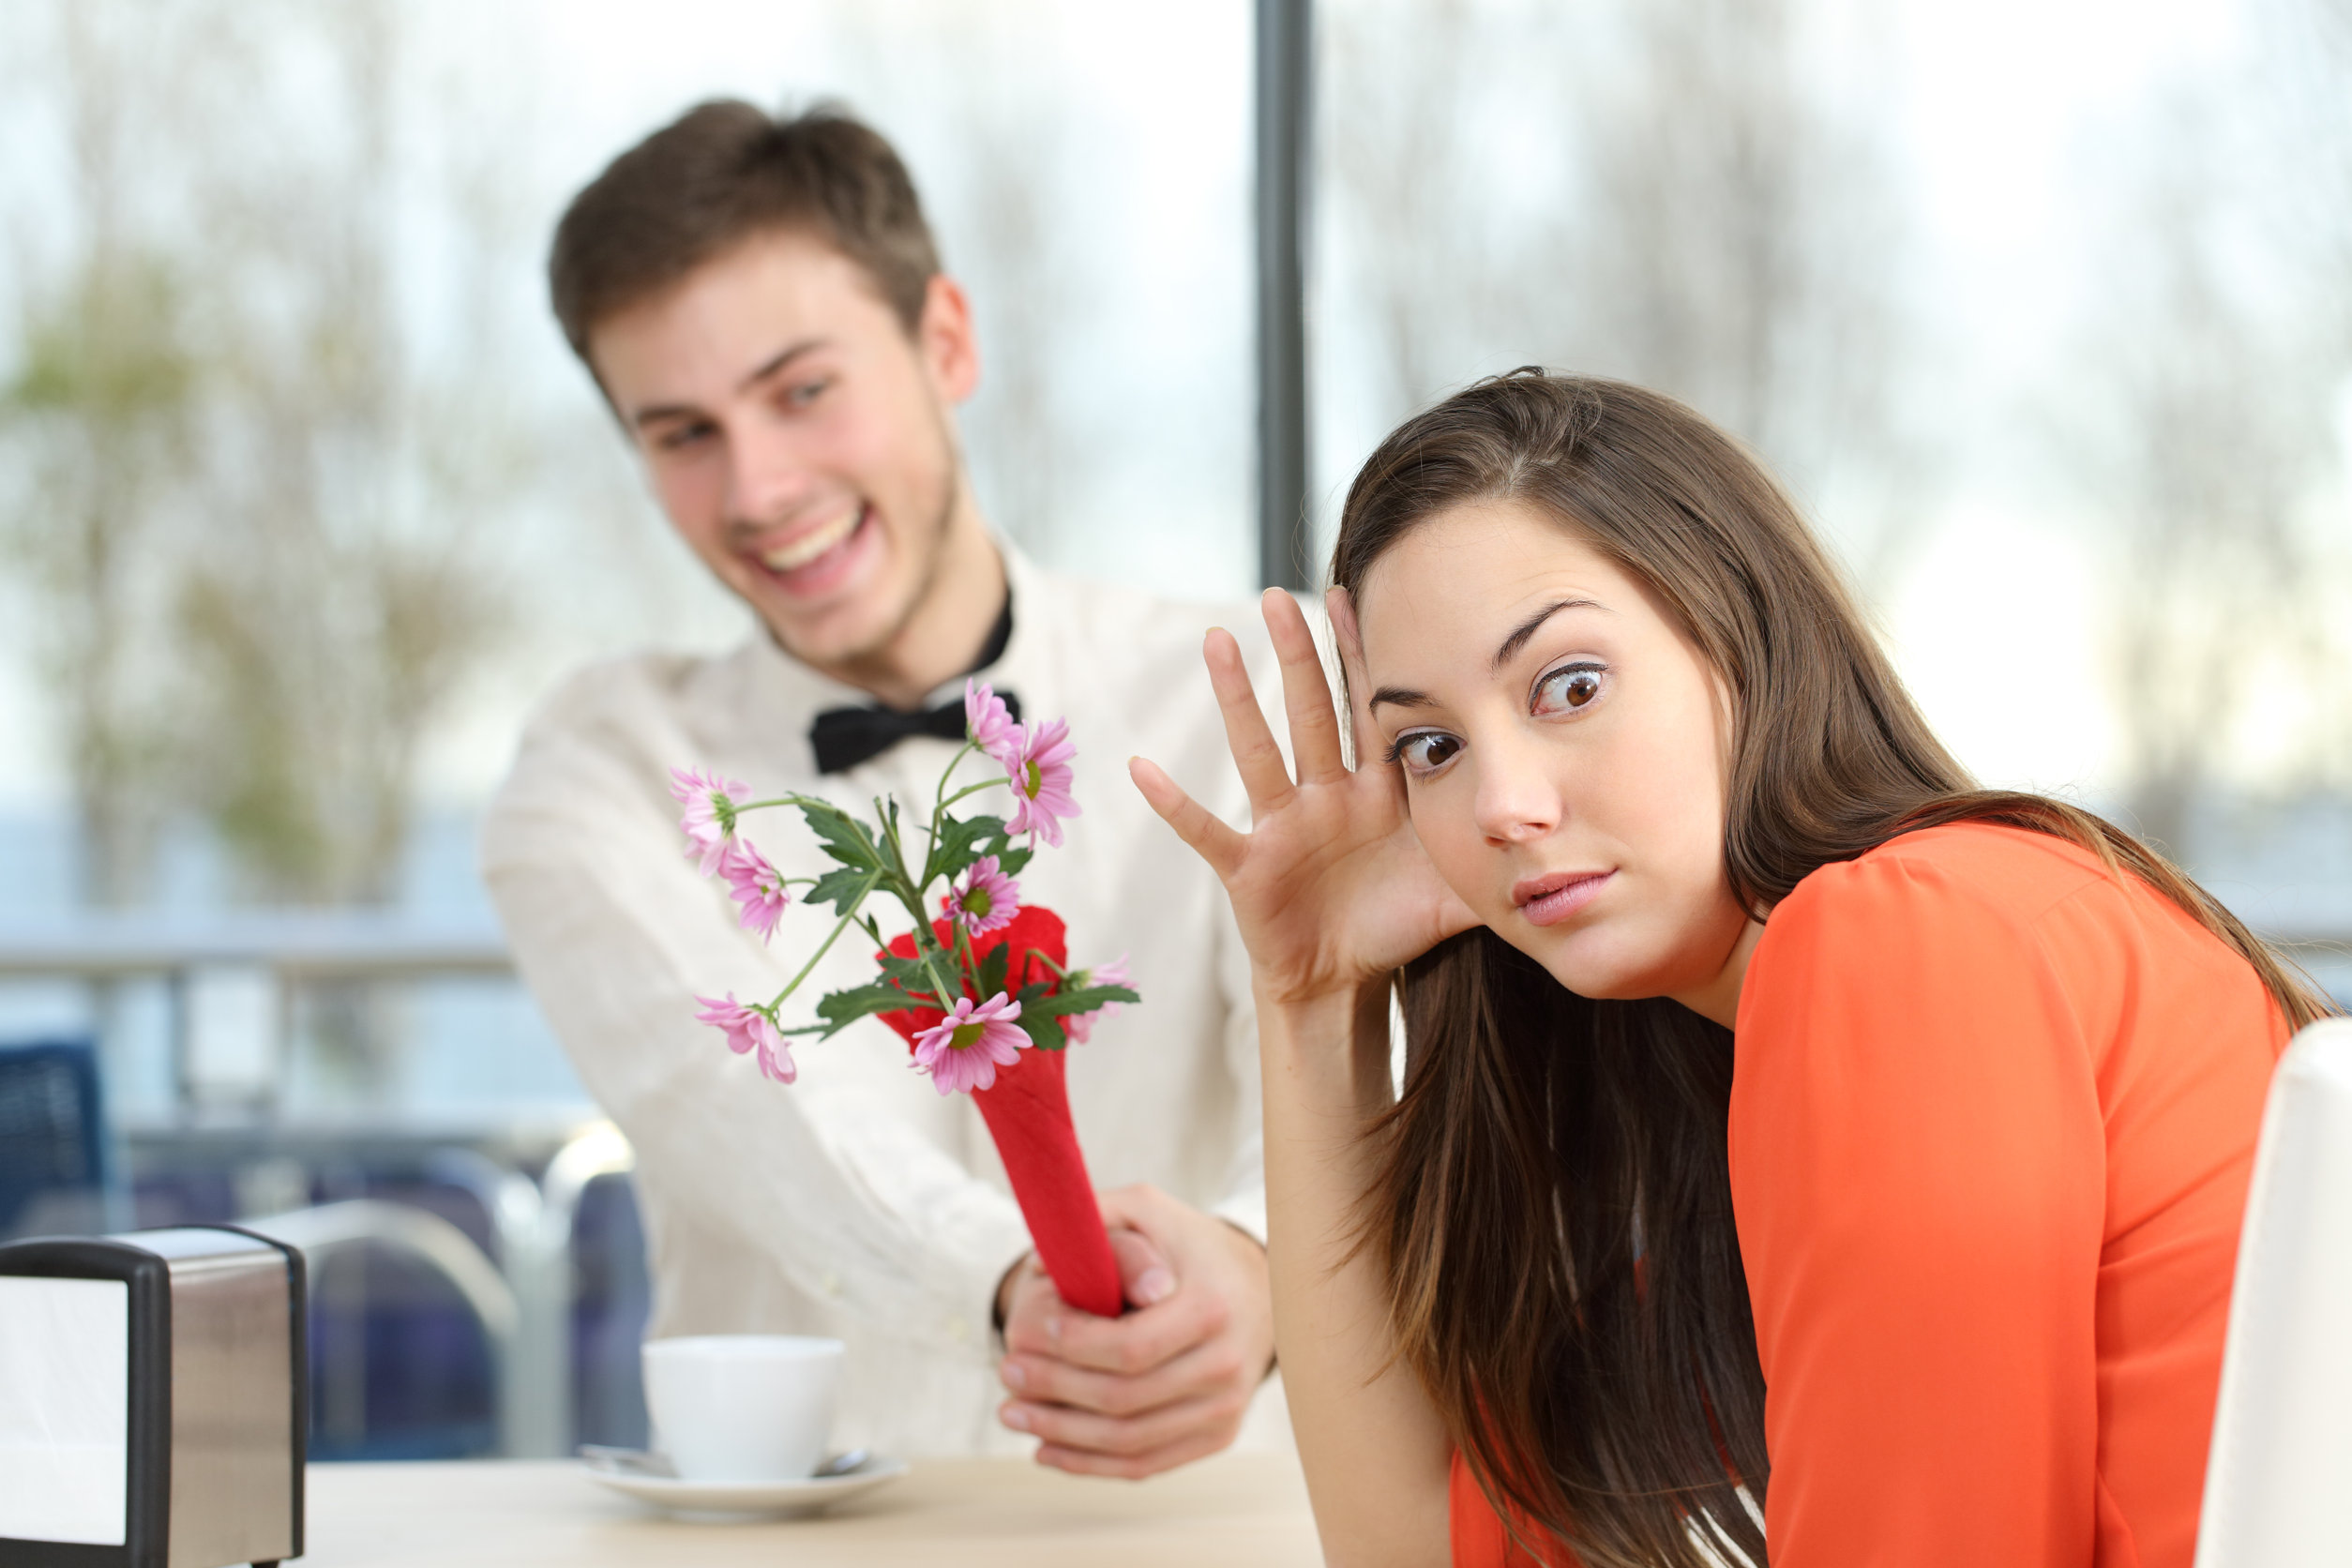 Poll: Wat vind jij grote afknappers op een eerste date? 43